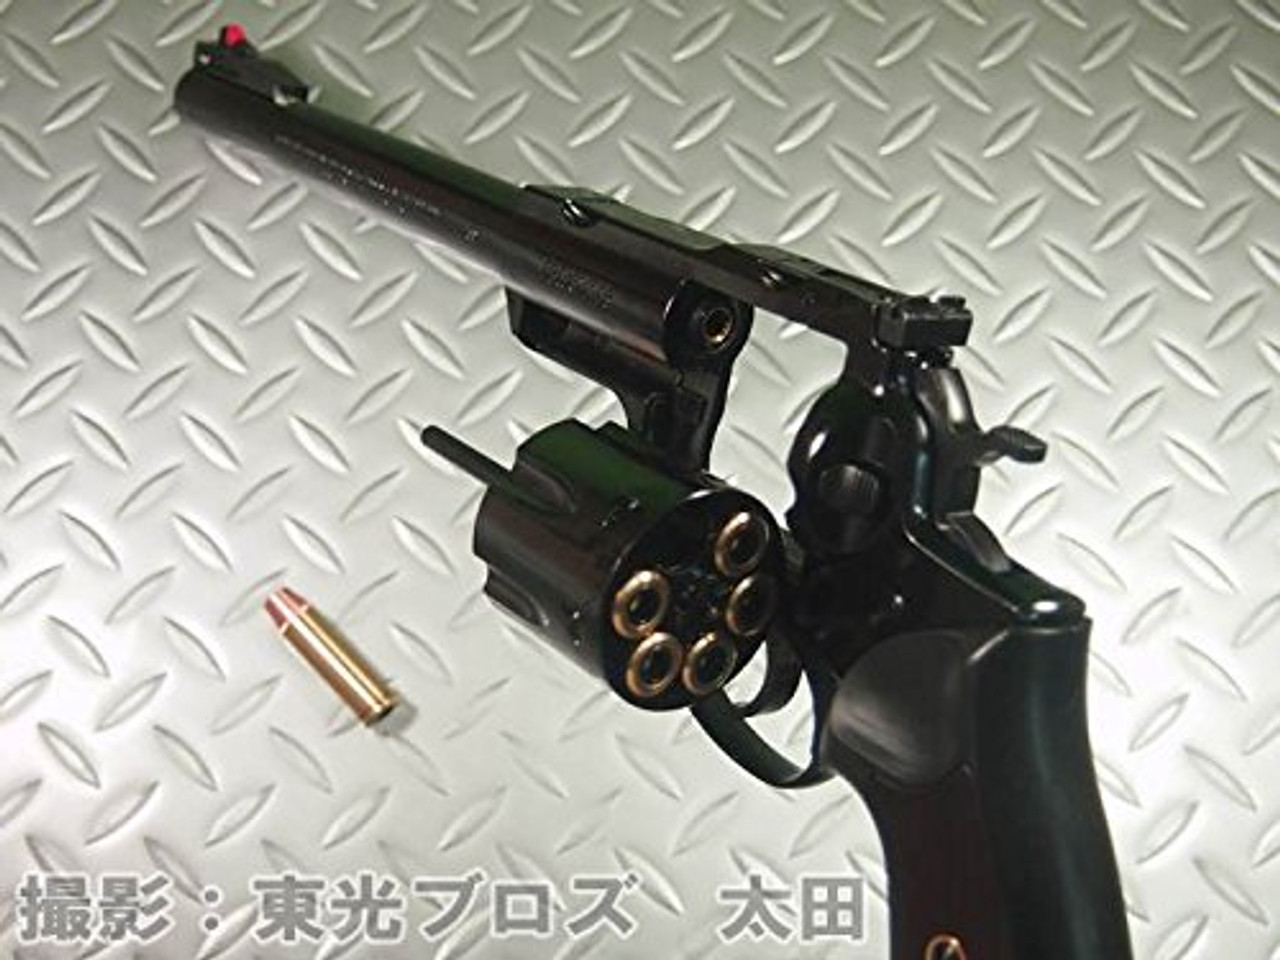 Cylinder of Marushin Super Redhawk 6 inches Deep Black Gas revolver Airsoft gun